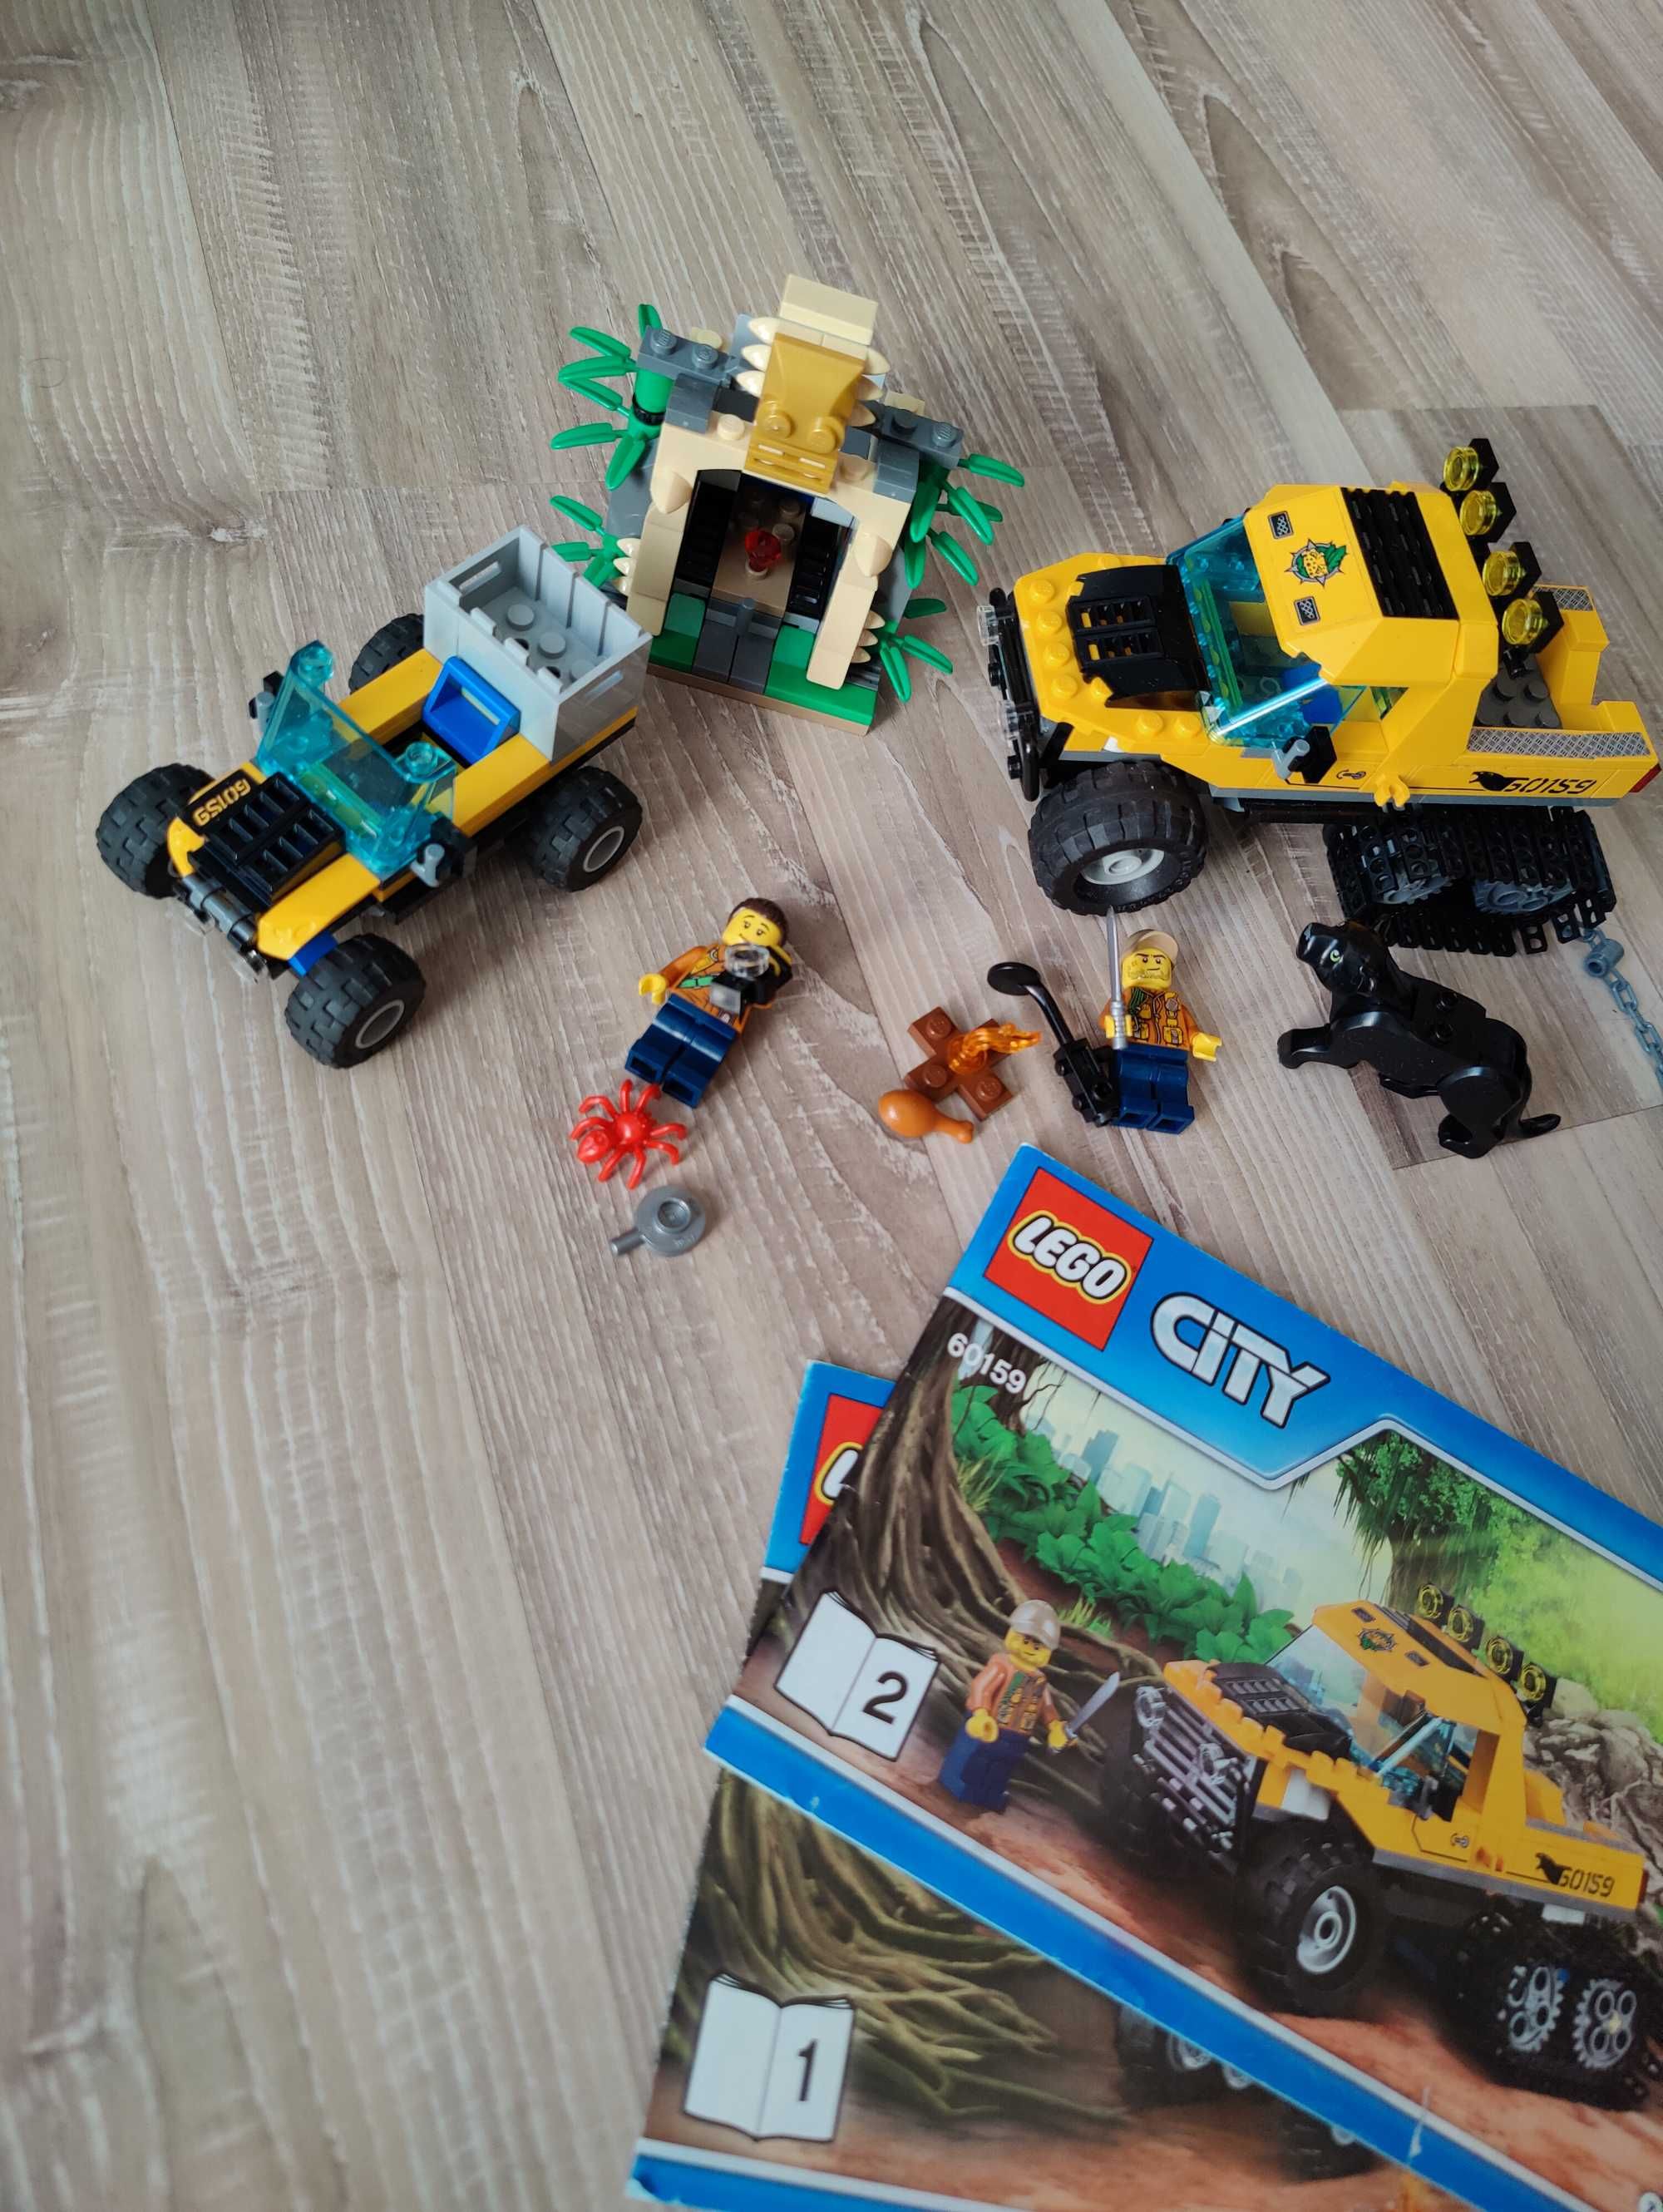 Lego City - 60221, 60011, 60012, 60163, 60226, 60219, 60157, 60159